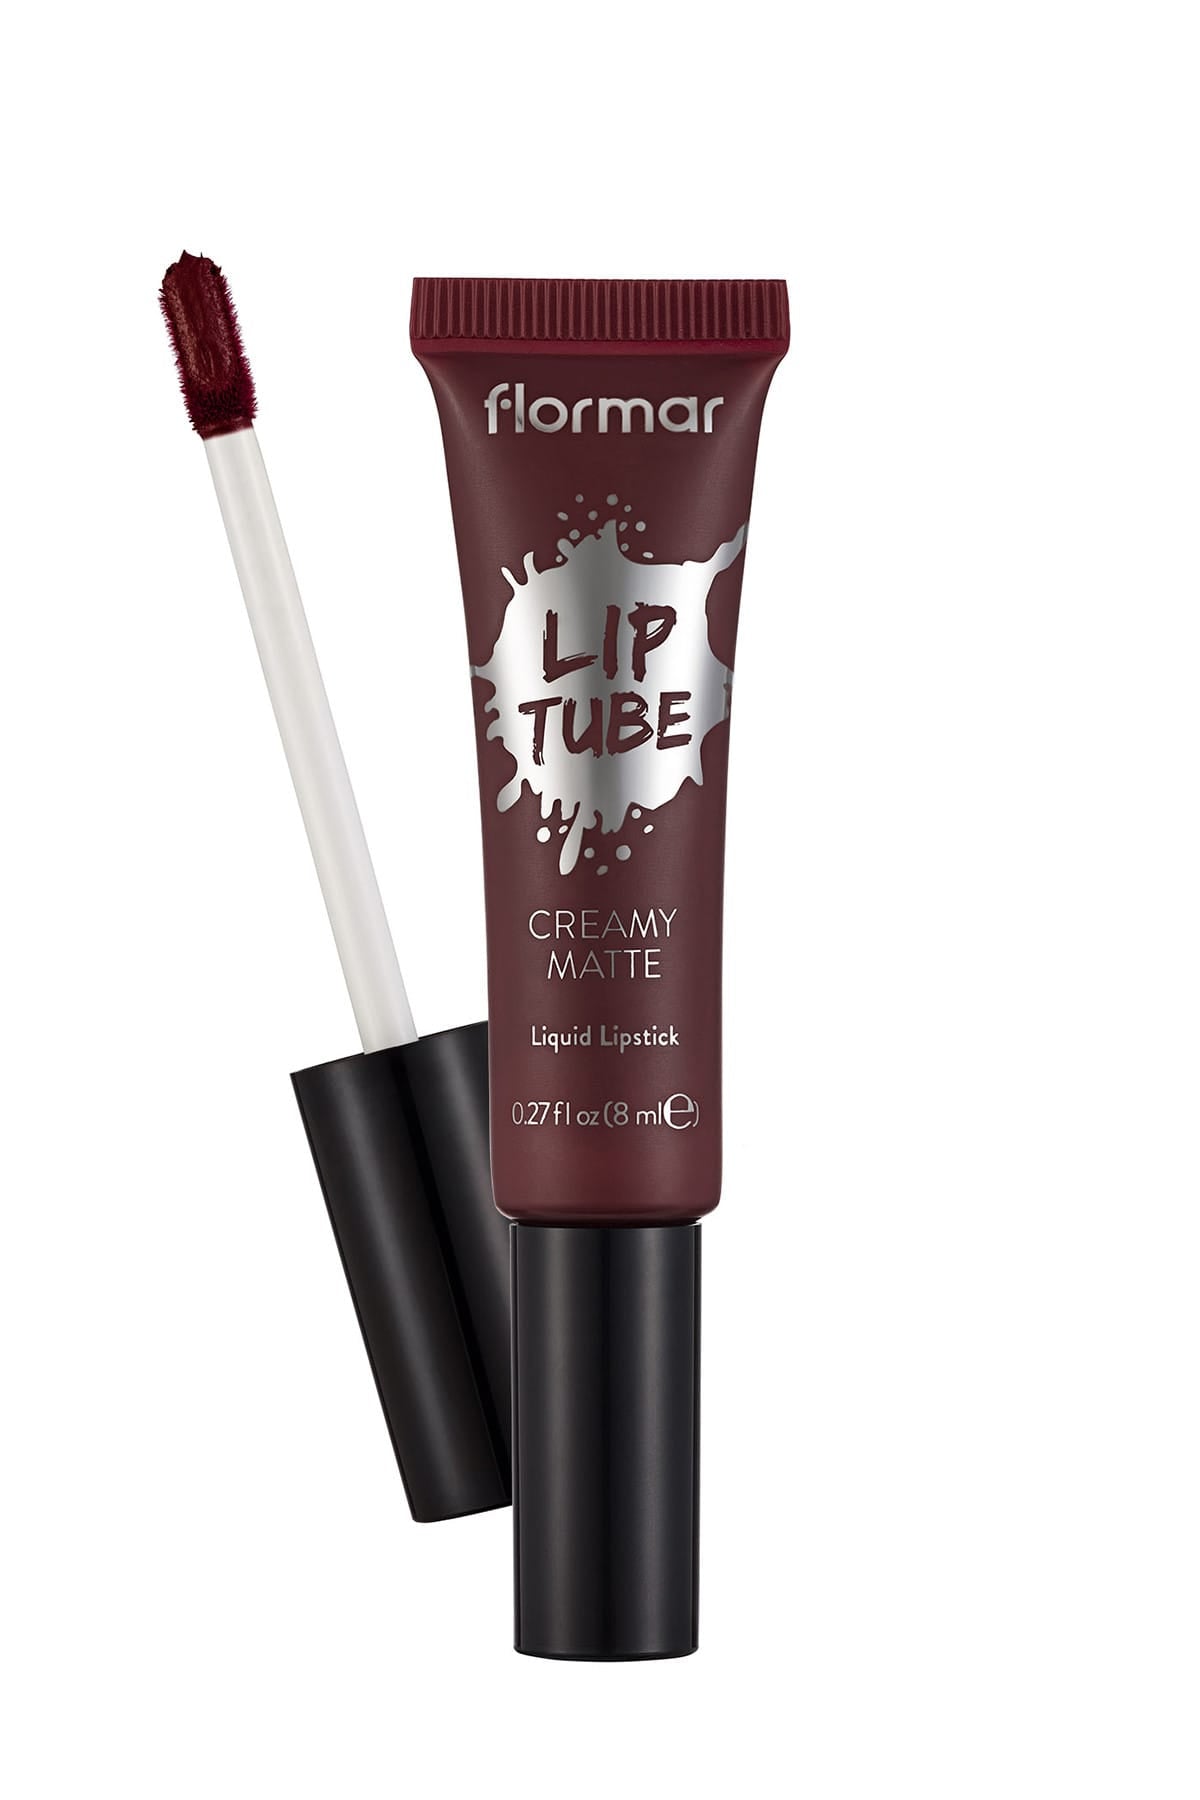 Flormar Creamy Matte Lip Tube - 11 Deep Bordeaux